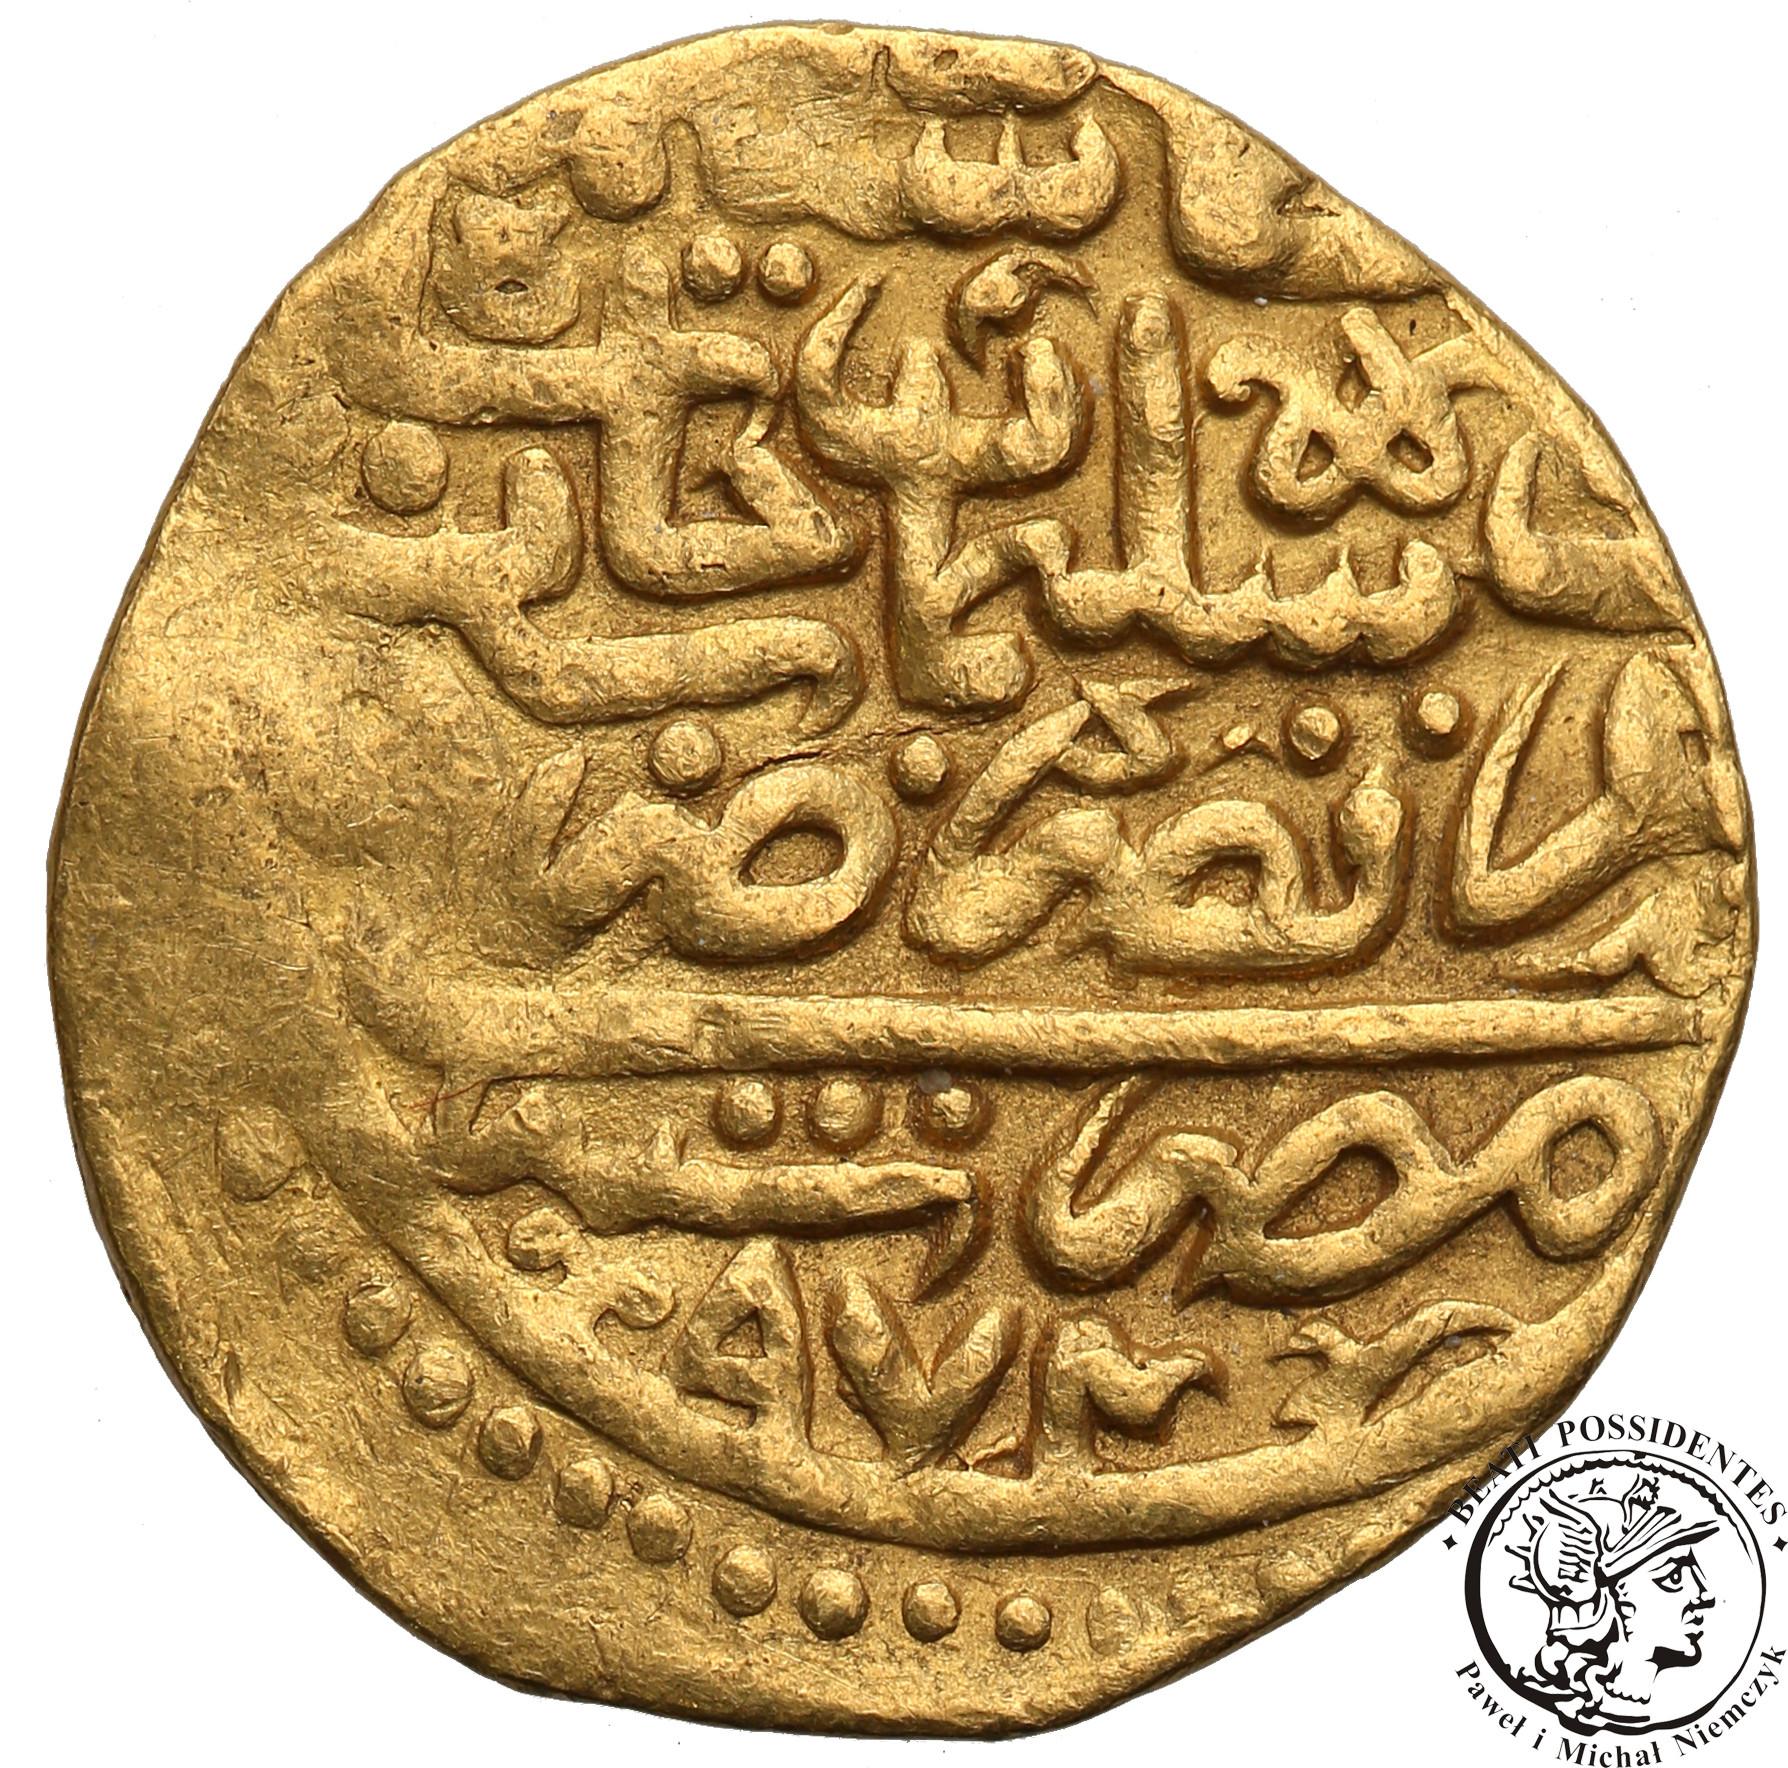 Egipt Selim II 1566-74 ałtyn AH 974 (1566) st.3+